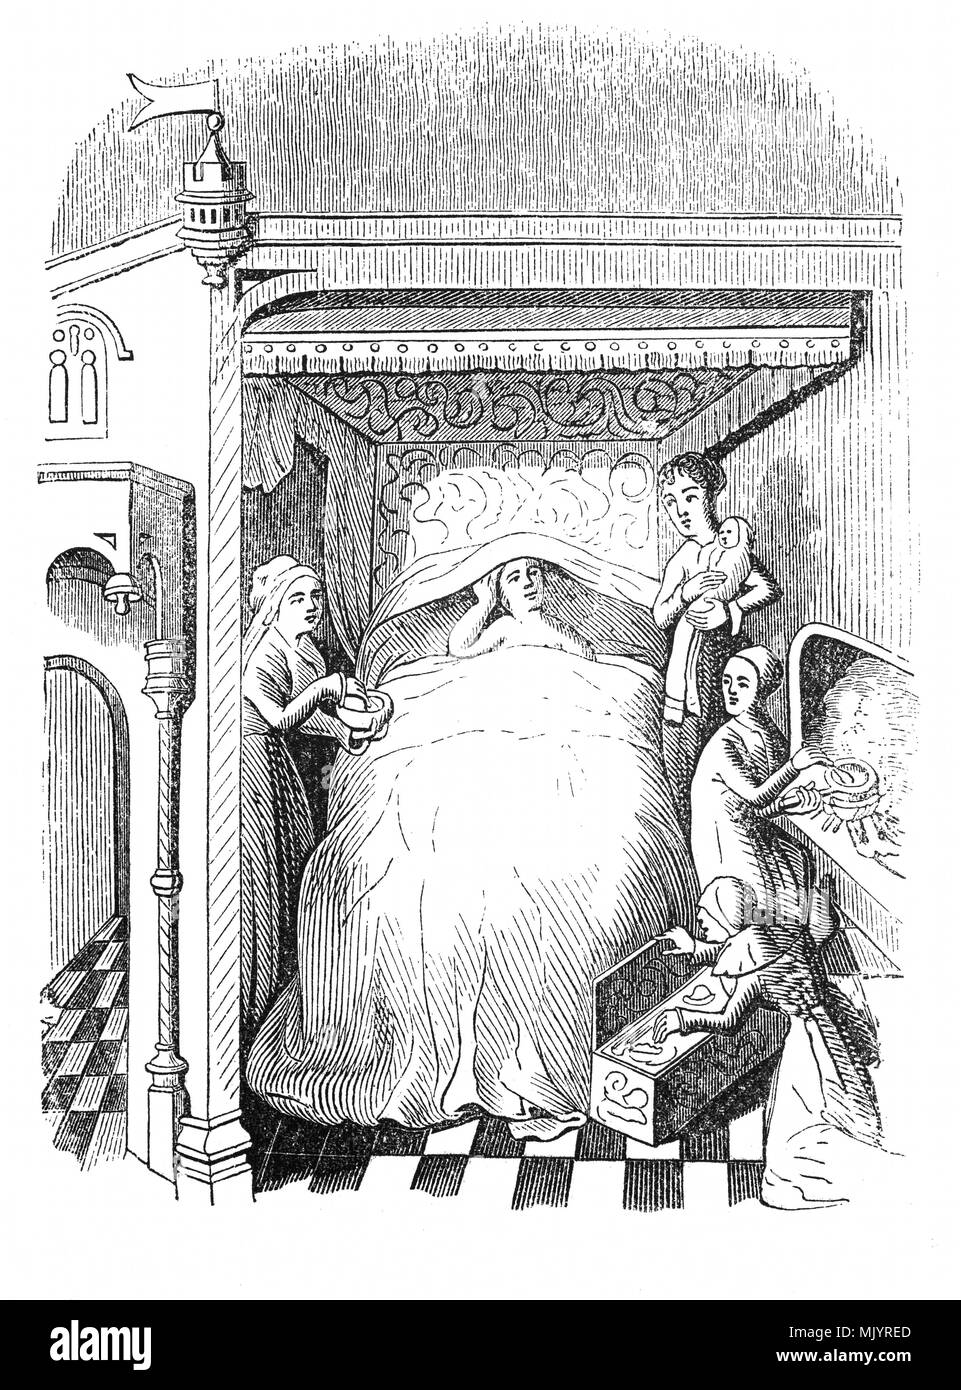 Un XV - XVI secolo camera da letto in cui il letto è stata un occasione per mostrare lo stato. Probabilmente appartenente a una ricca famiglia, grande e suggestivo, spesso incrostati di oro o di gioielli e riccamente intagliato, letti espansi molto al di là di una semplice piattaforma durante il Medioevo. Tipicamente fatte di legno pesante, i letti dei ricchi sono state sollevate alte dal pavimento, a volte così elevata che una stepstool era necessario per raggiungerli. Nota le molte donne in attesa e le infermiere con un bambino, eventualmente dopo il parto. Foto Stock